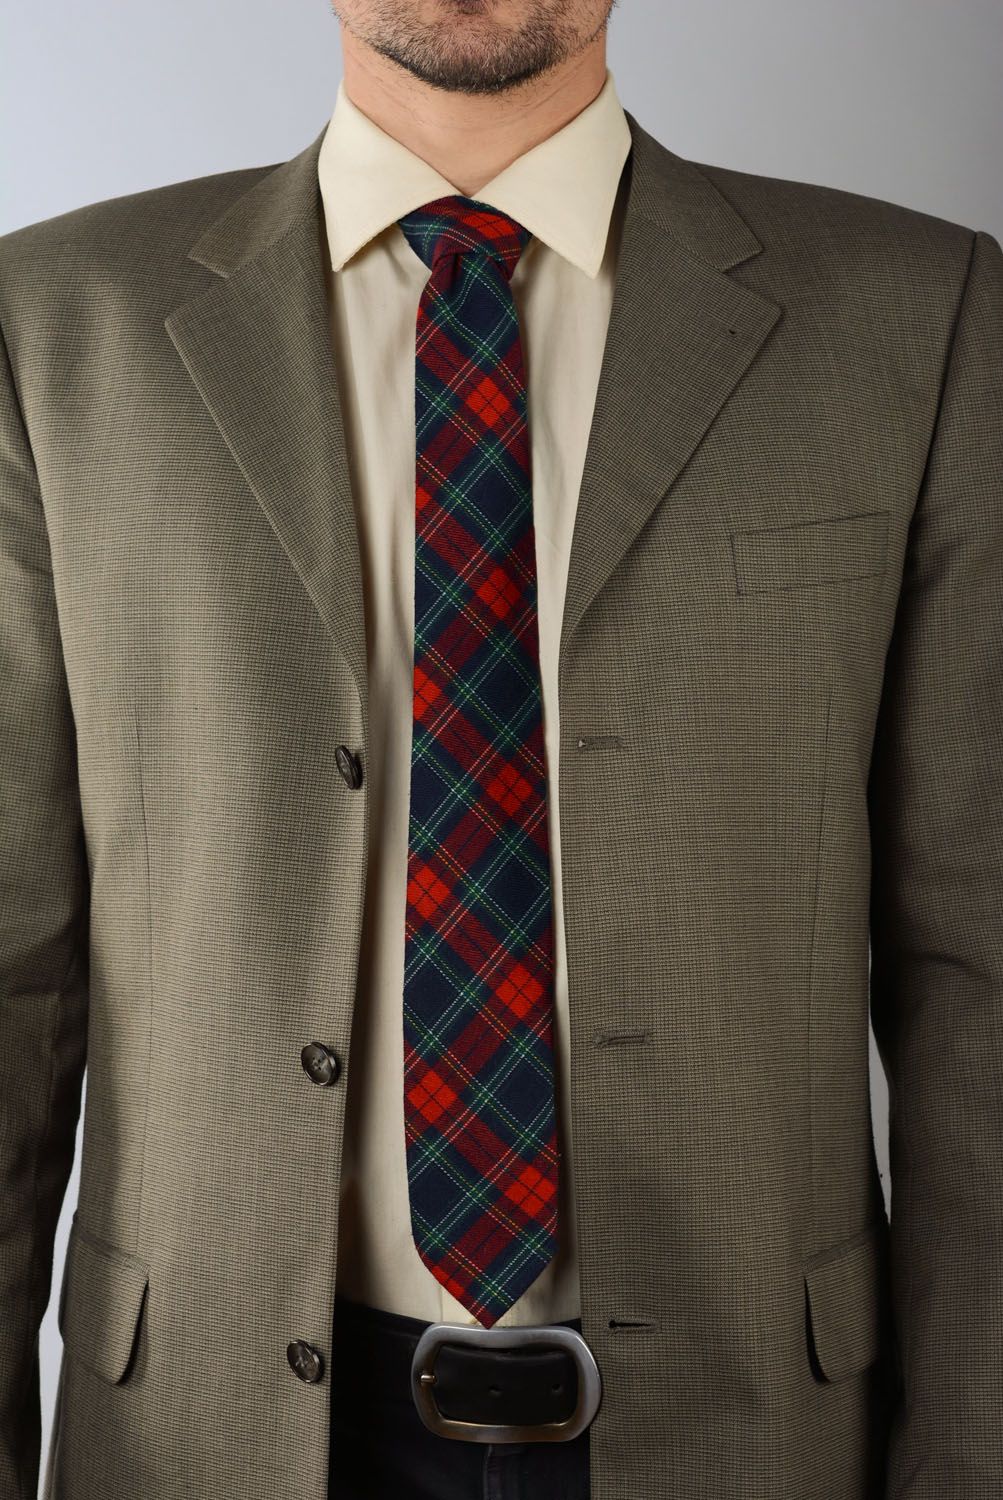 Cravate en tweed à carreaux faite main photo 1